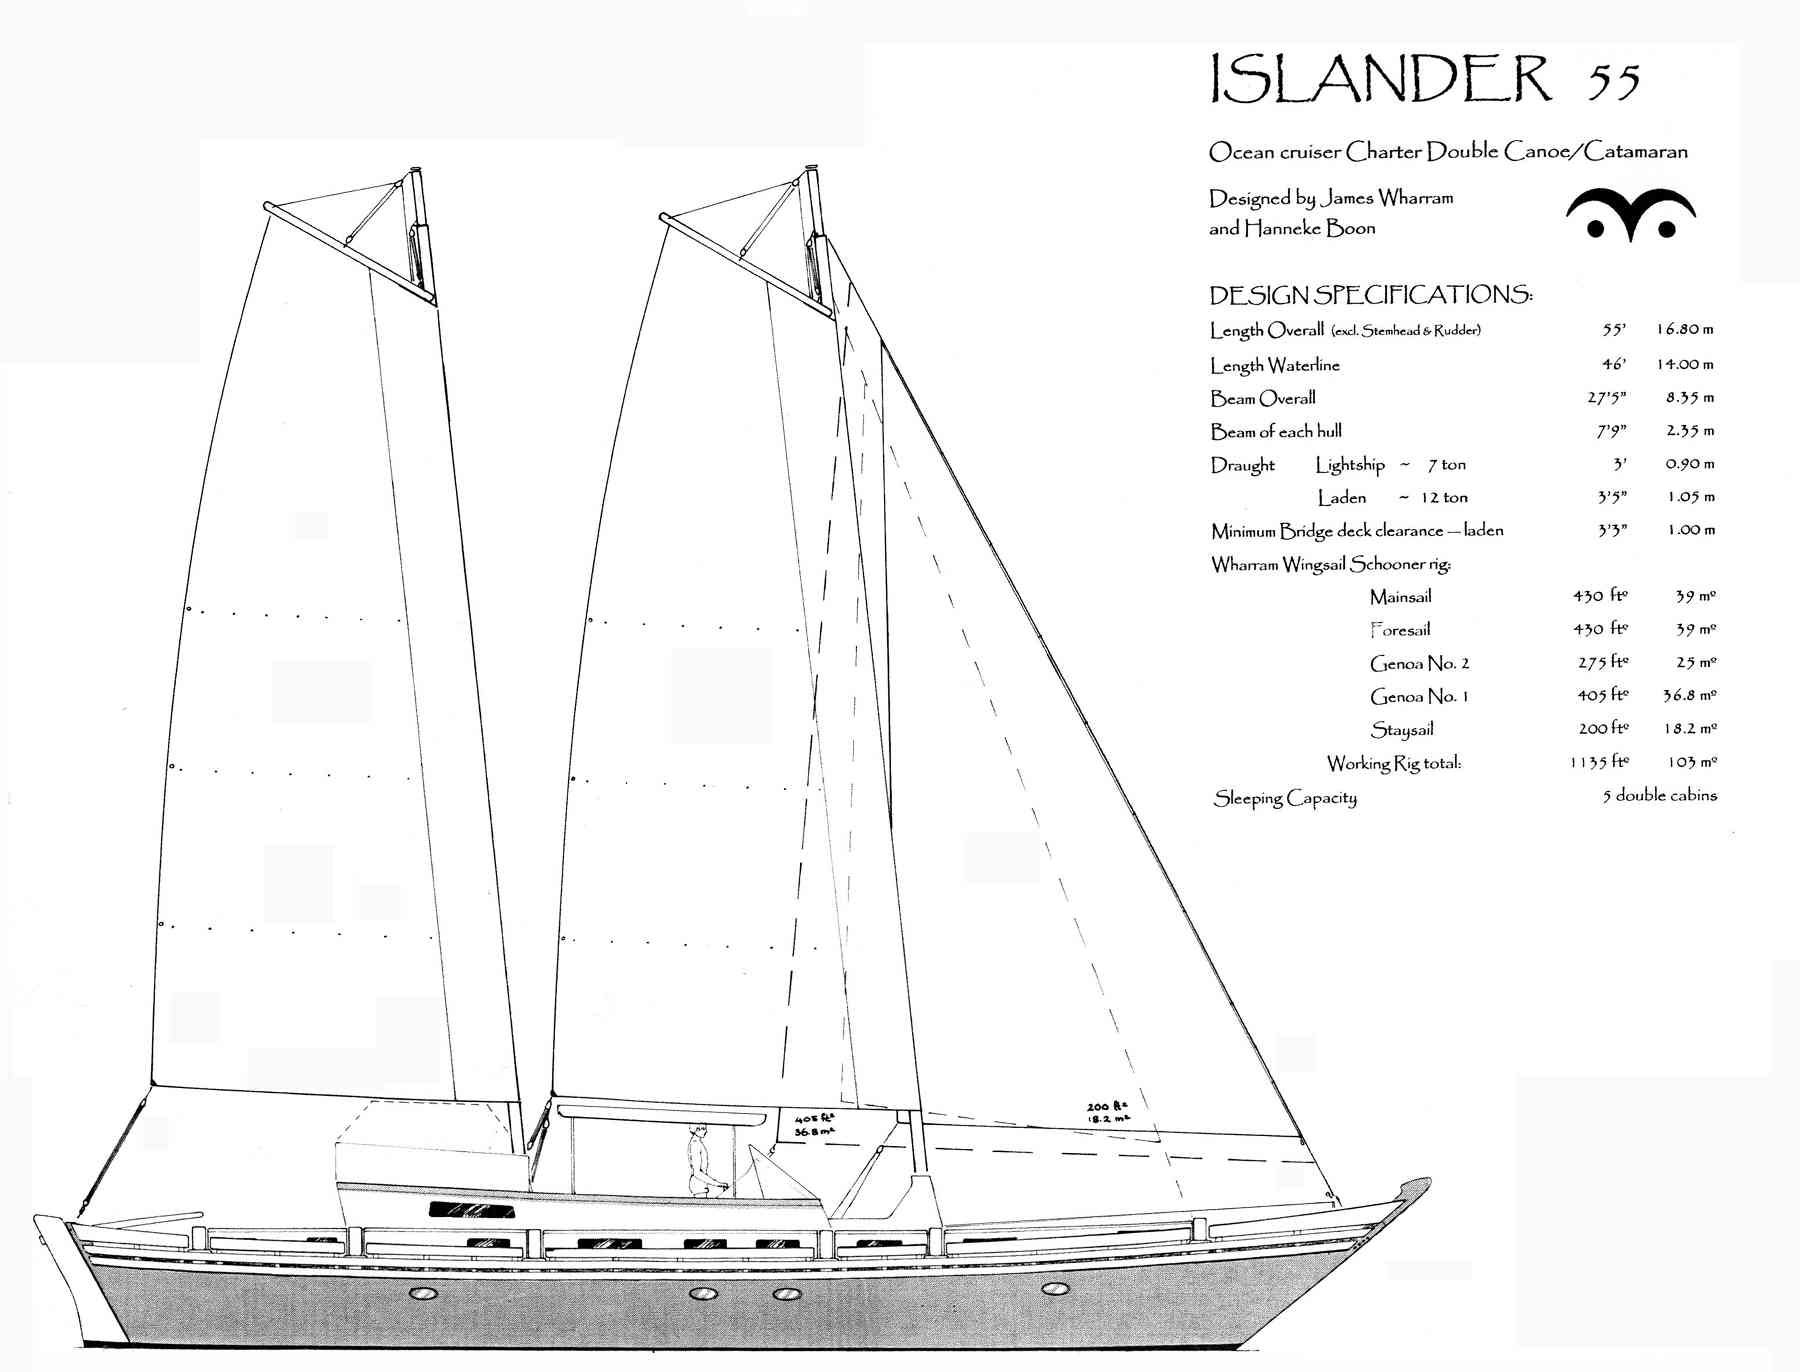 Islander 55 profile and design data